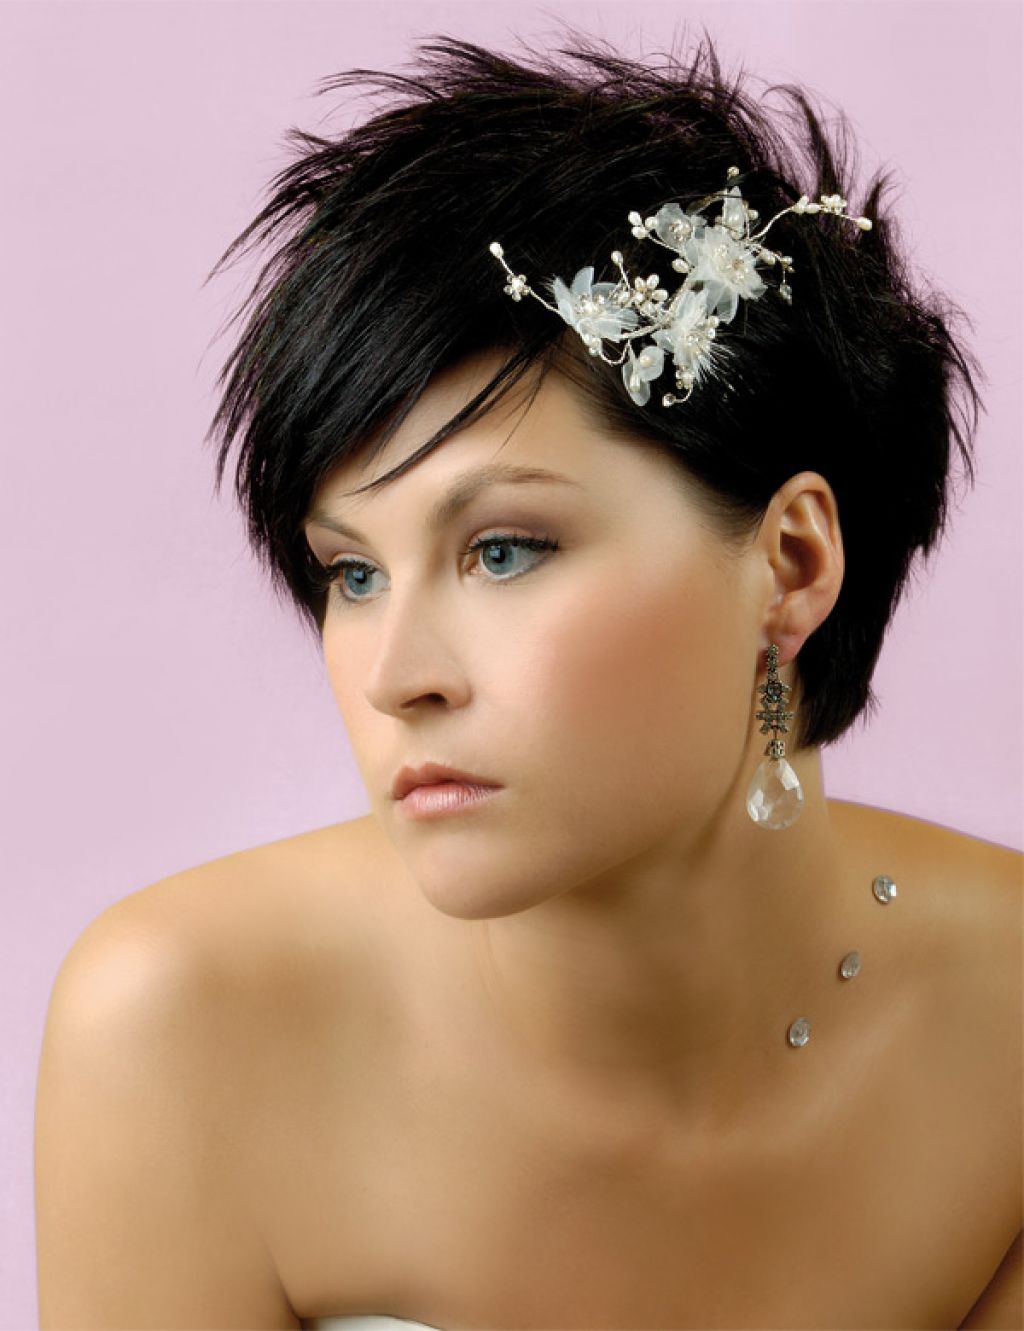 На фото: свадебная прическа с короткими волосами с цветком в волосах.